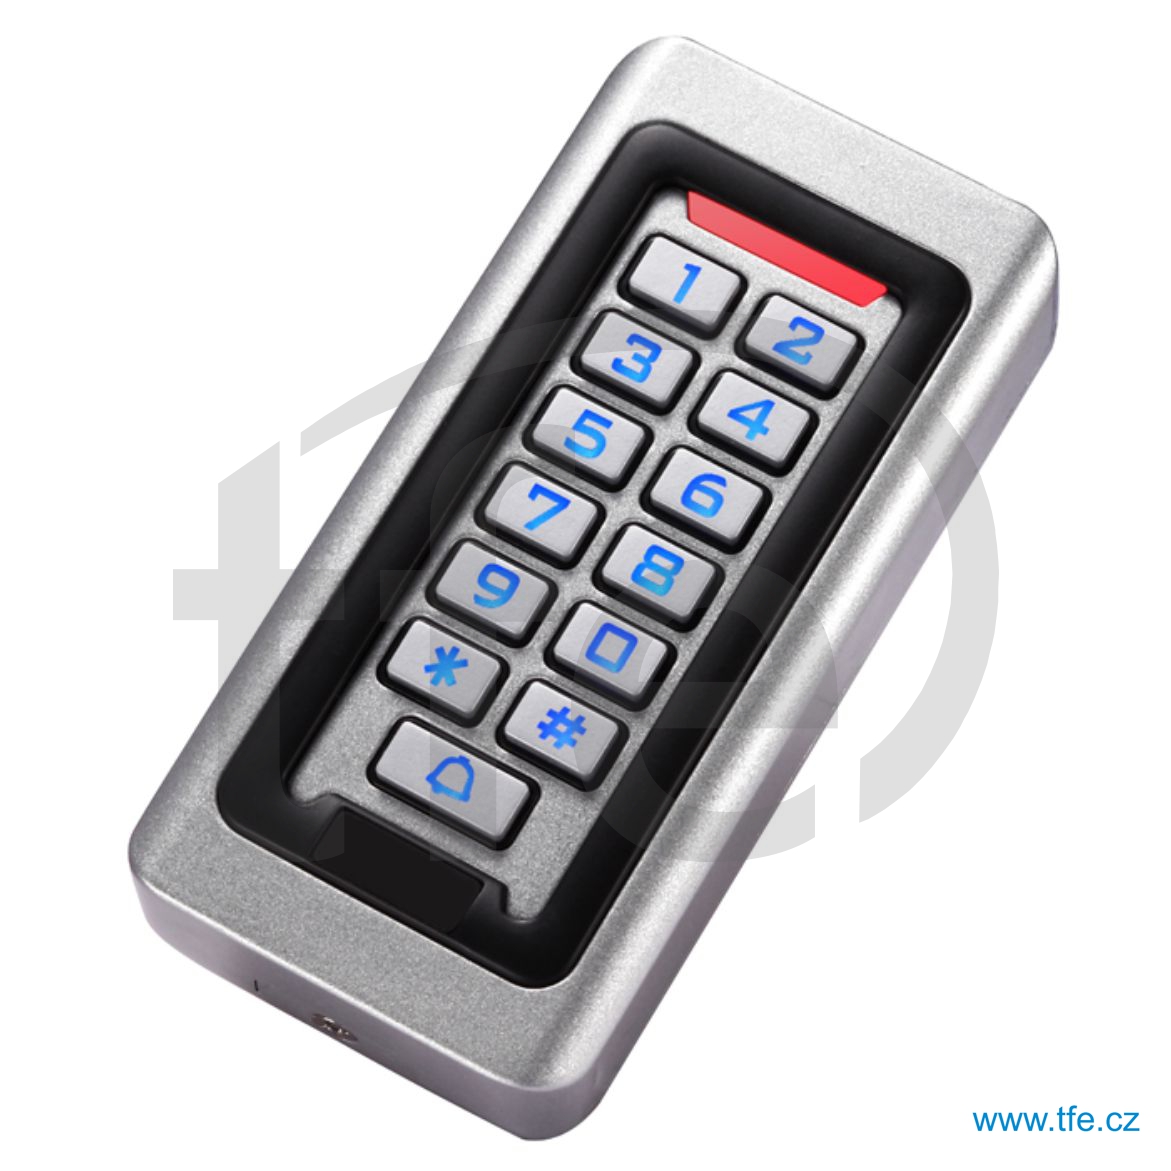 Venkovní přístupový systém s klávesnicí a čtečkou RFID ACK3W